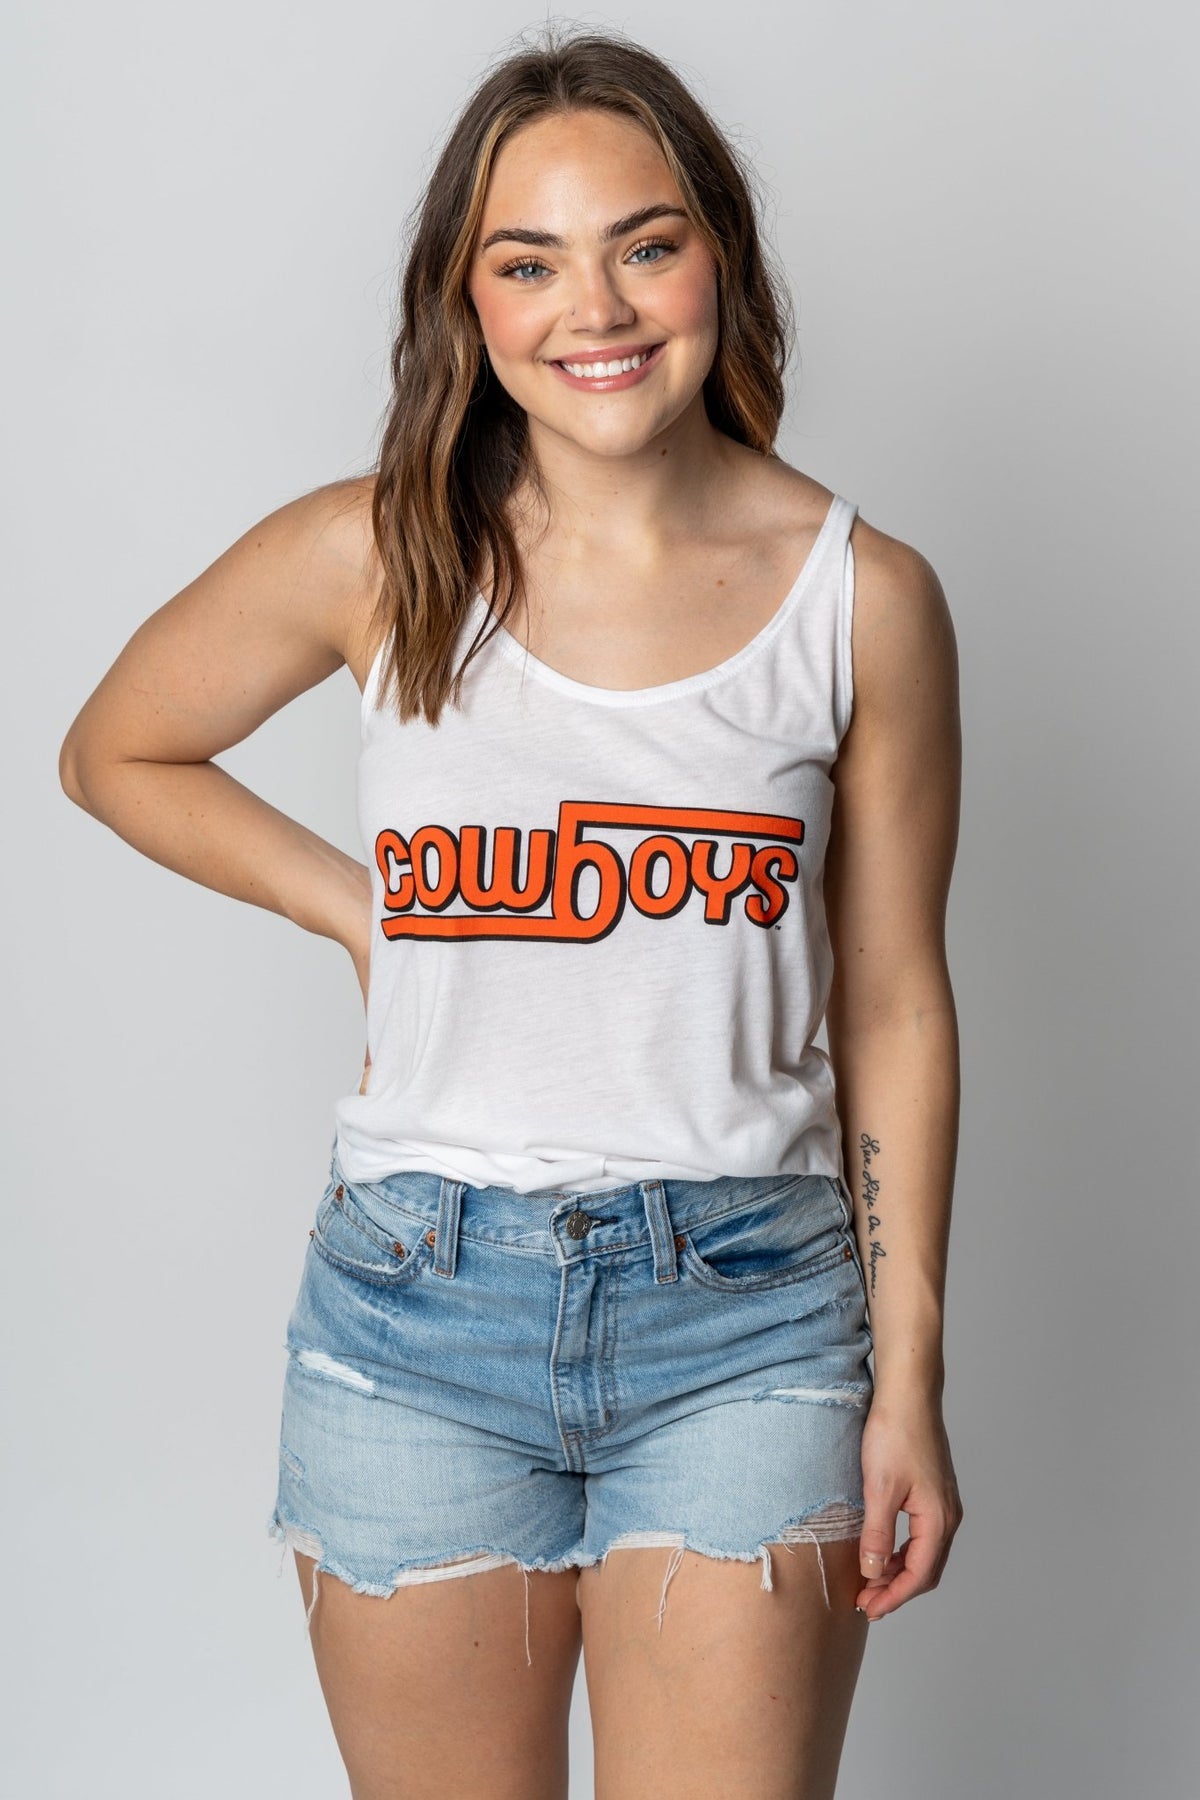 OSU OSU Cowboys b design flowy tank top Tank Top | Lush Fashion Lounge Trendy Oklahoma State Cowboys Apparel & Cute Gameday T-Shirts